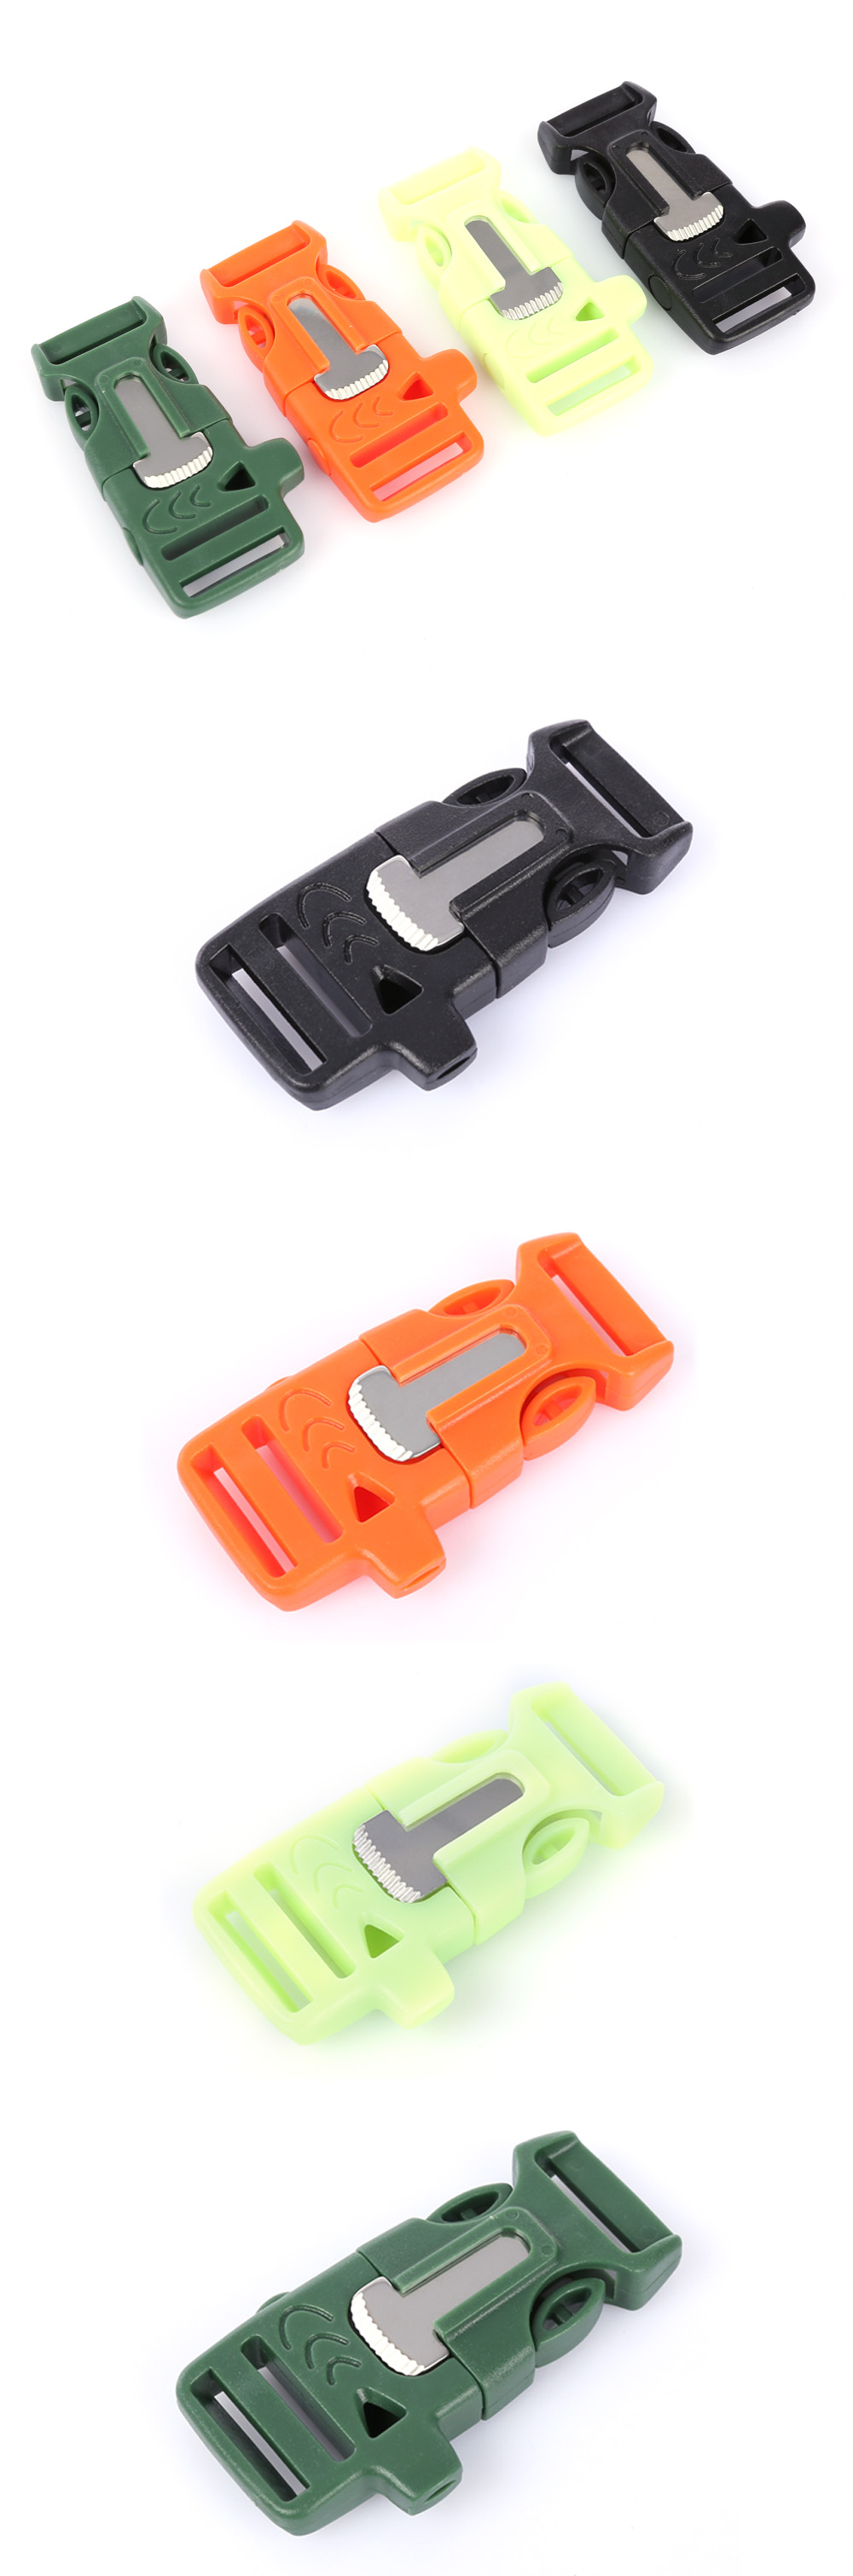 10pcs / Lot Multifunction Survival Paracord Bracelet Accessory Plastic Button Buckle